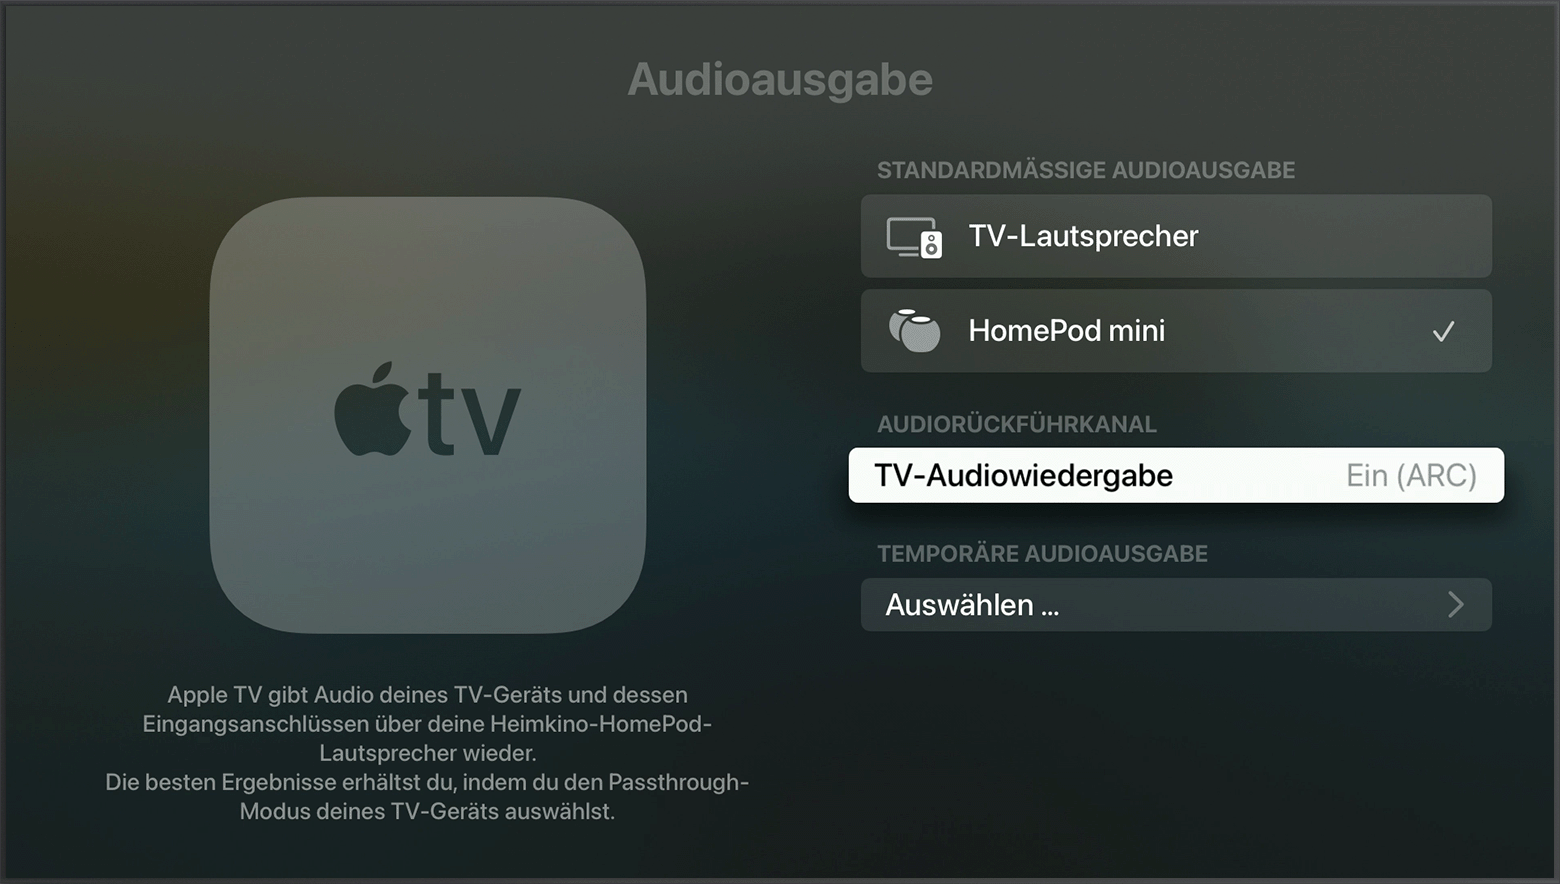 HDMI ARC oder eARC mit Apple TV 4K verwenden - Apple Support (DE)